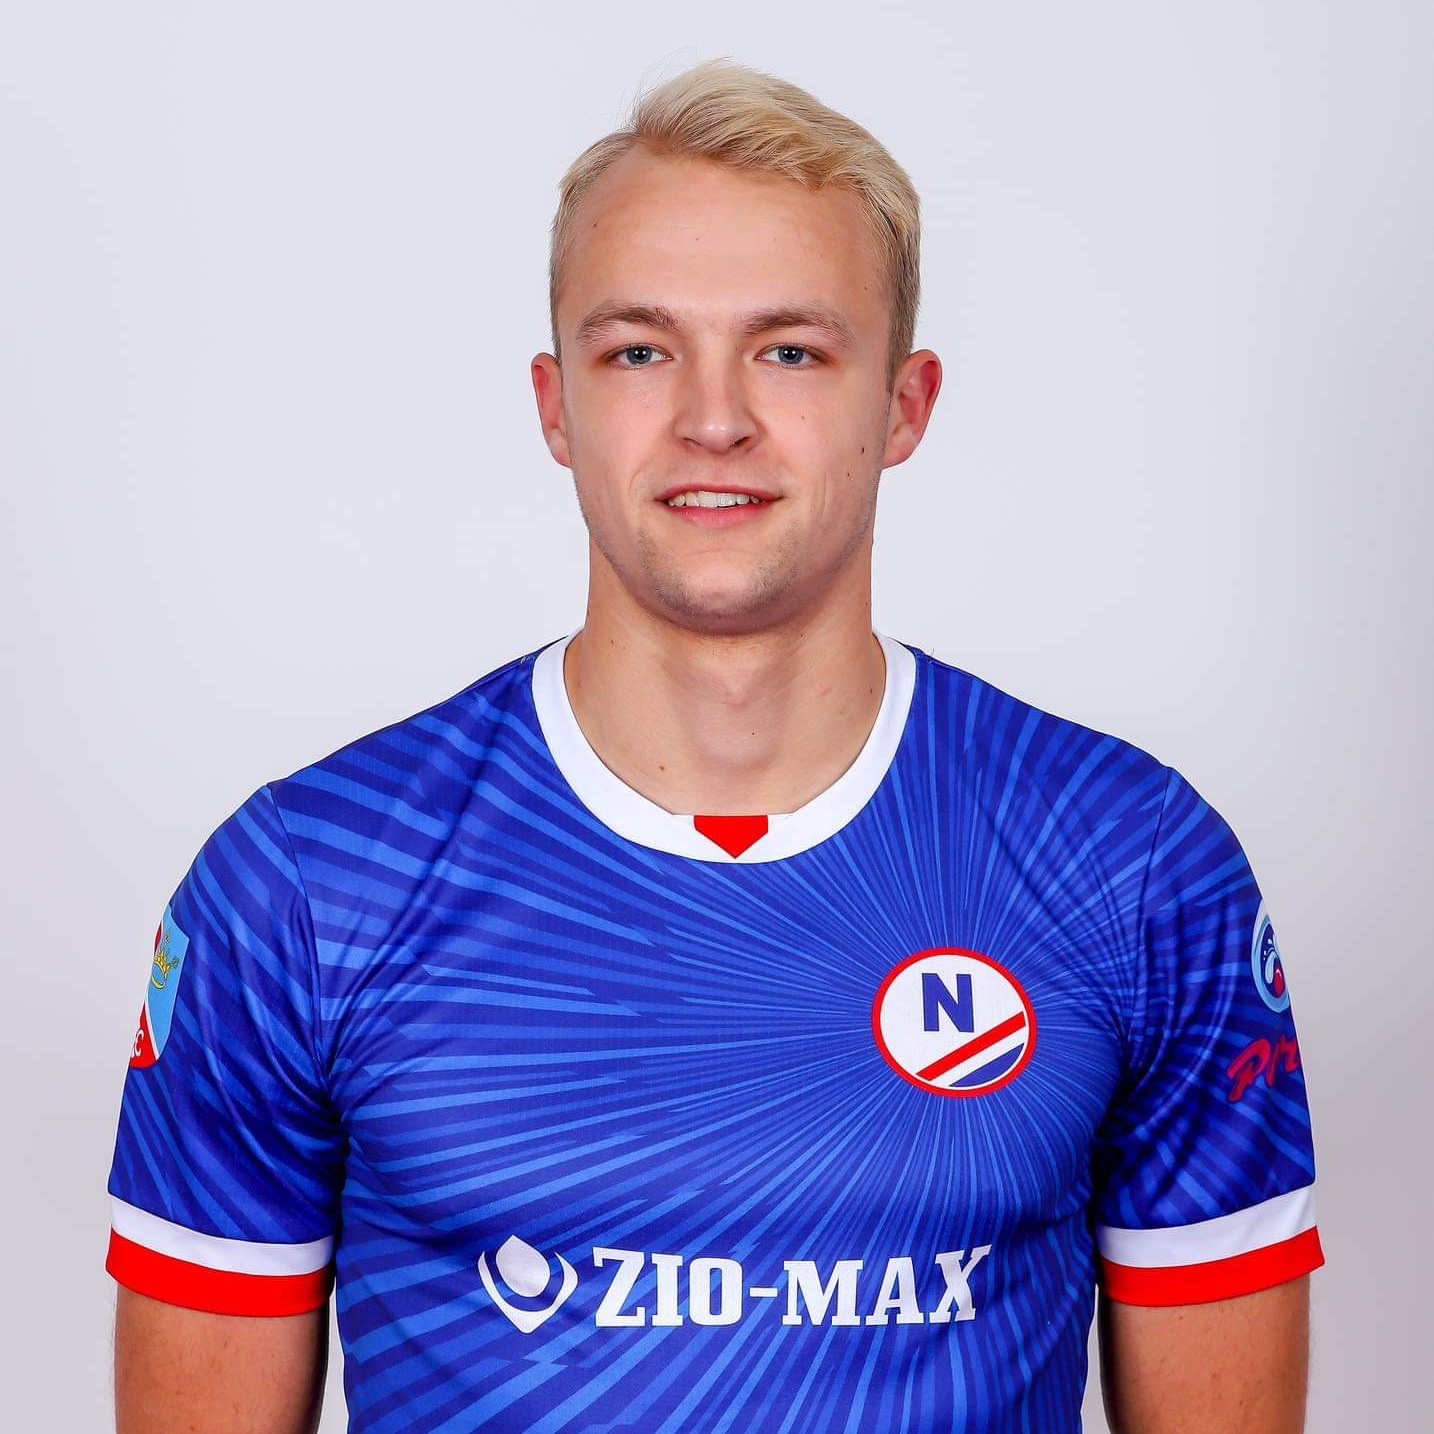 Mateusz Zębala – profile photo